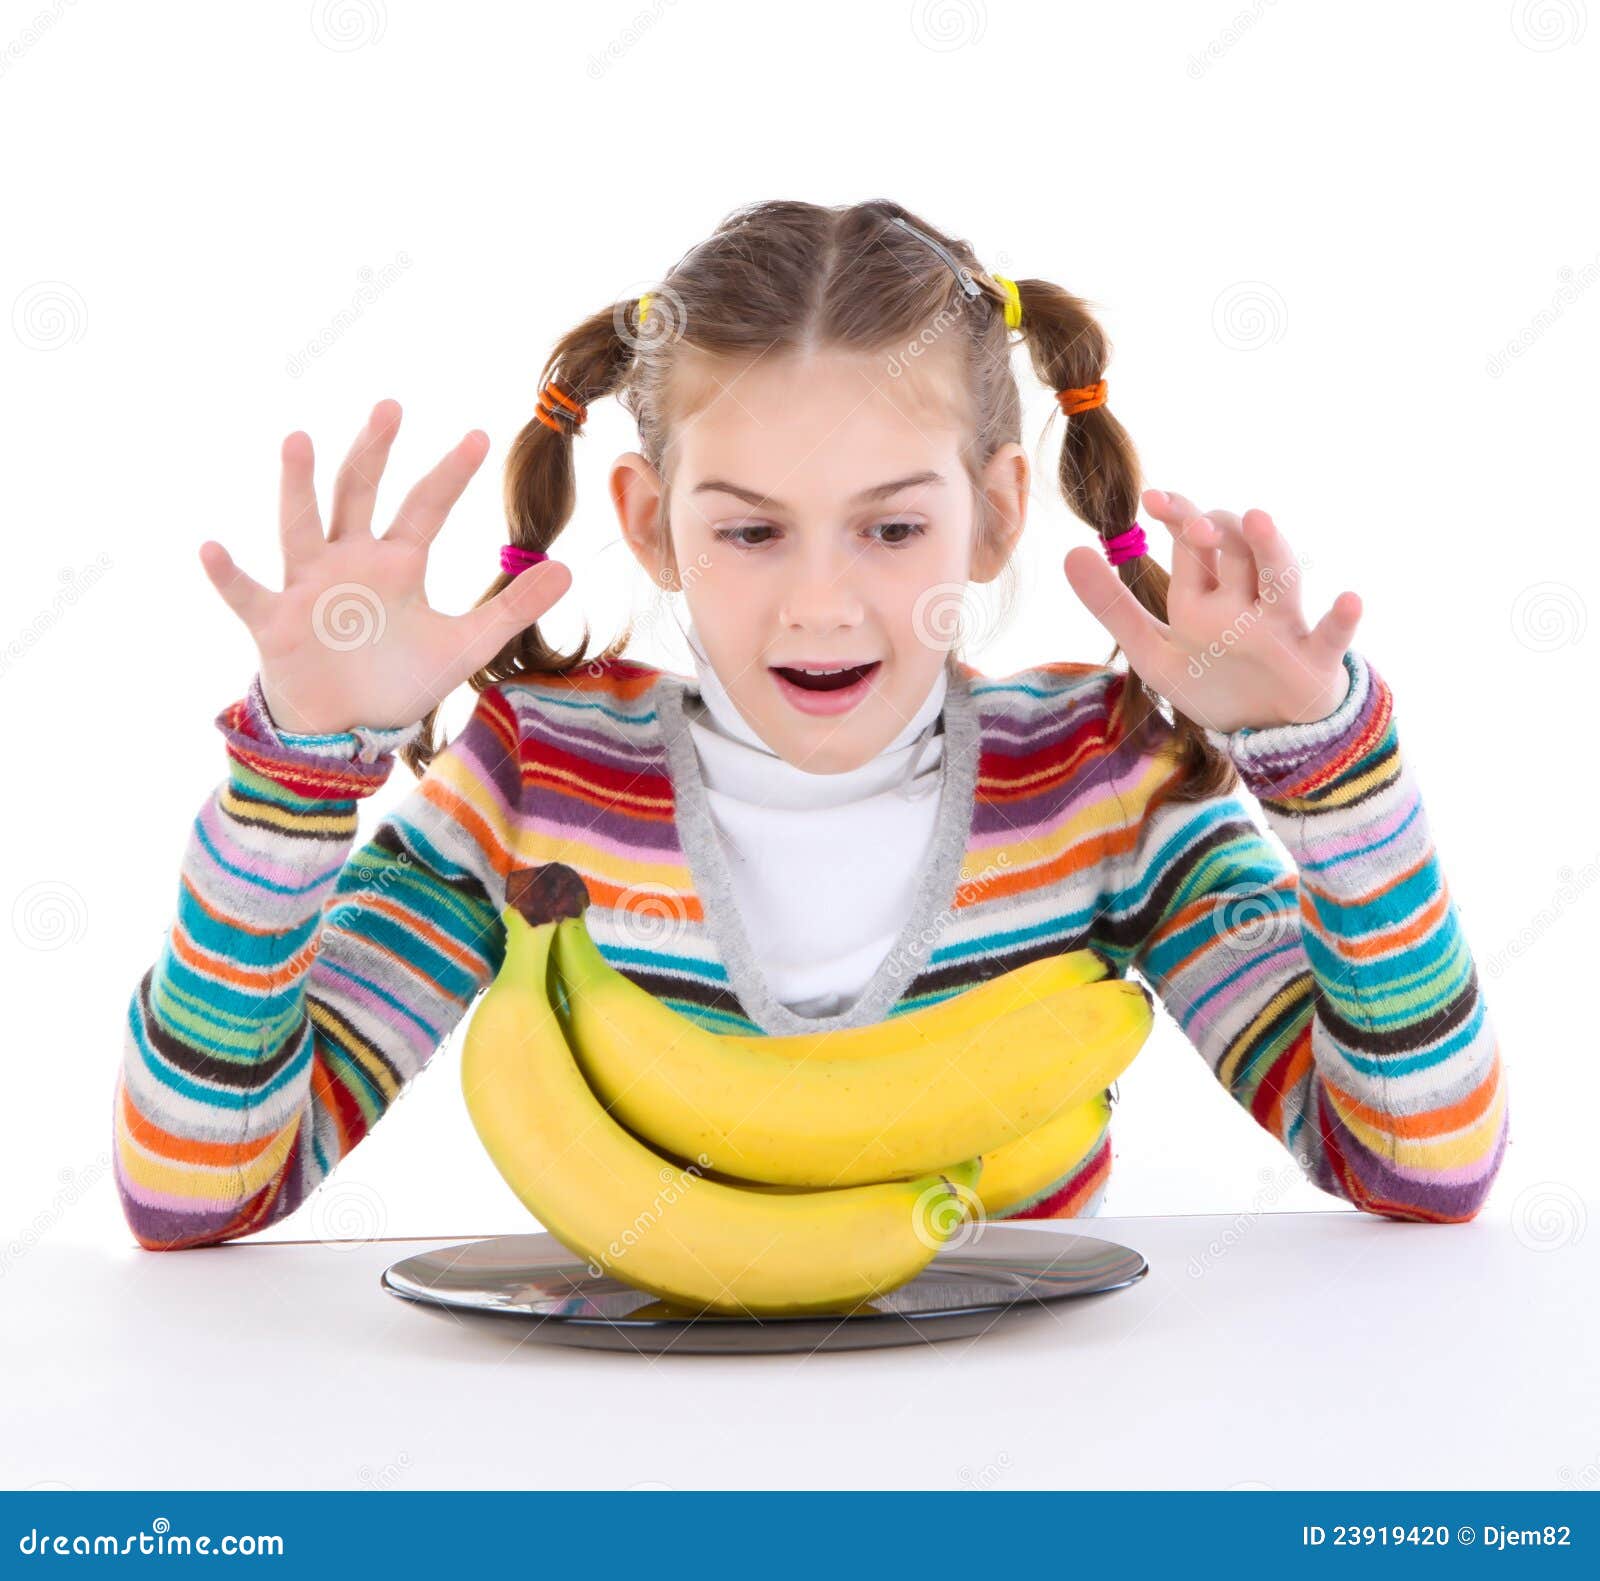 吃香蕉的女孩 库存图片. 图片 包括有 女性, 照亮, 相当, 红头发人, 食物, 子项, 楼梯栏杆, 雀斑 - 112660879